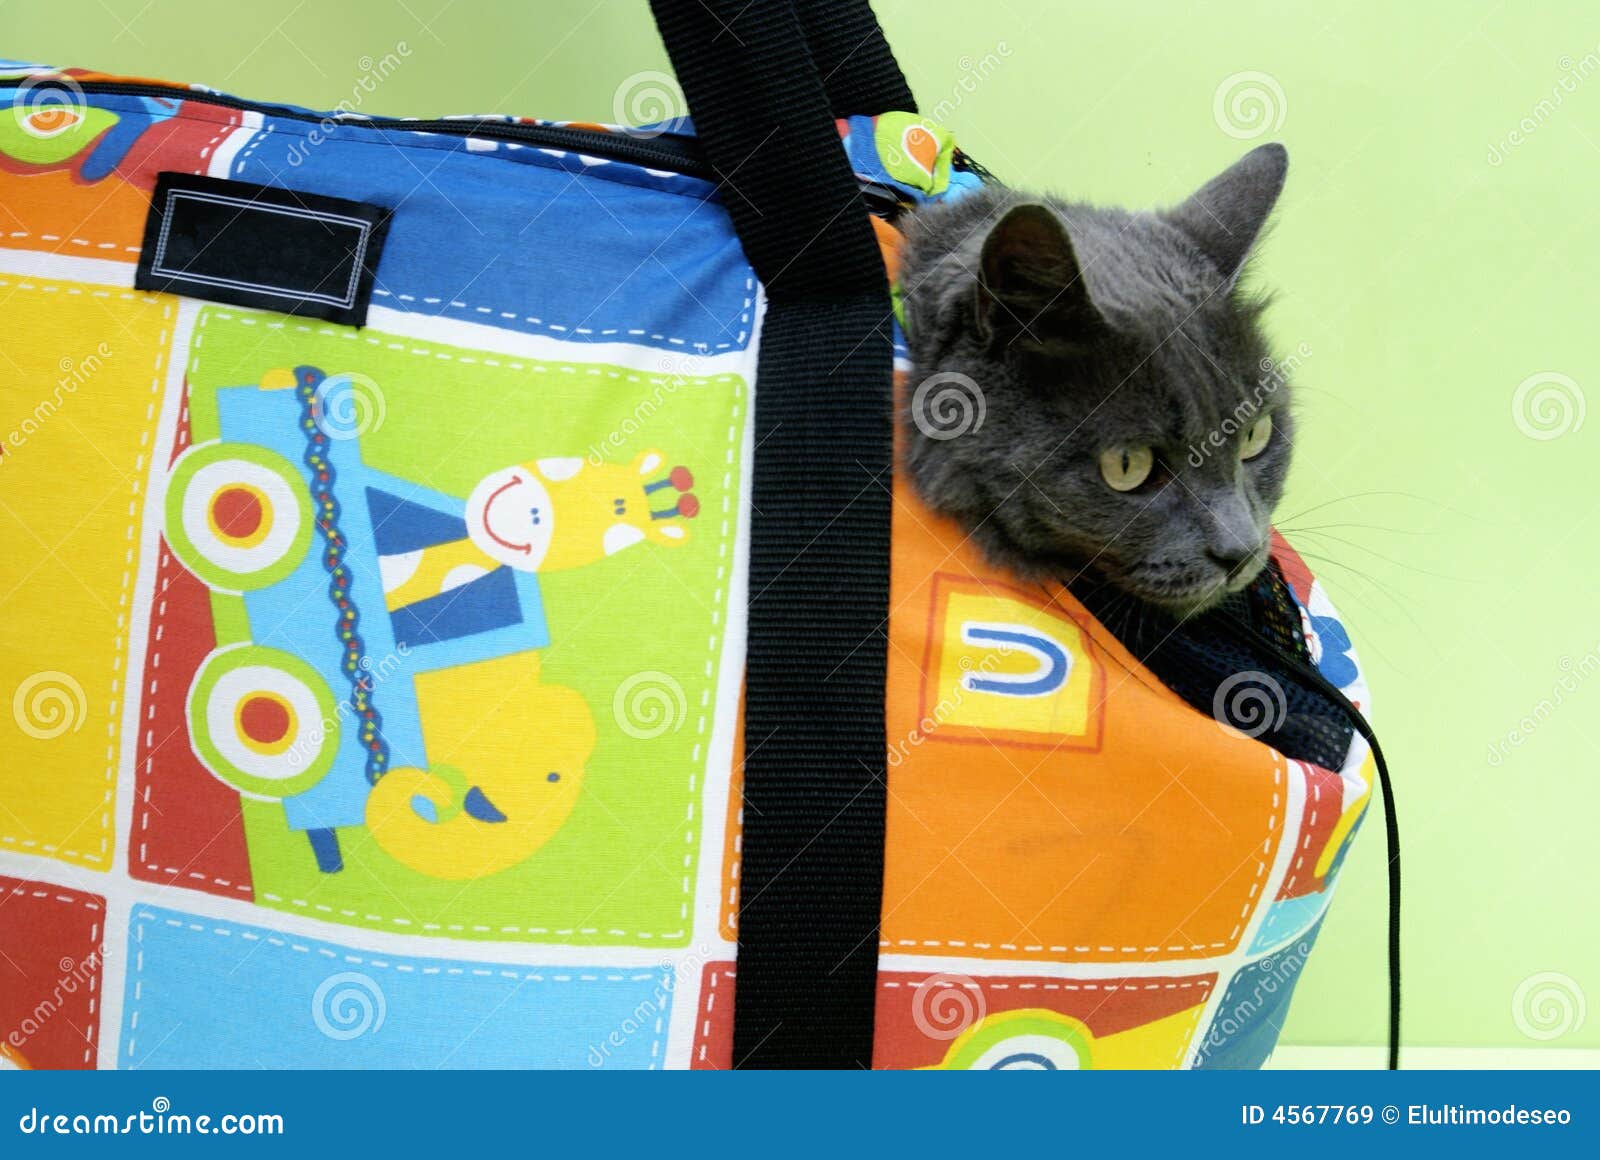 travel cat